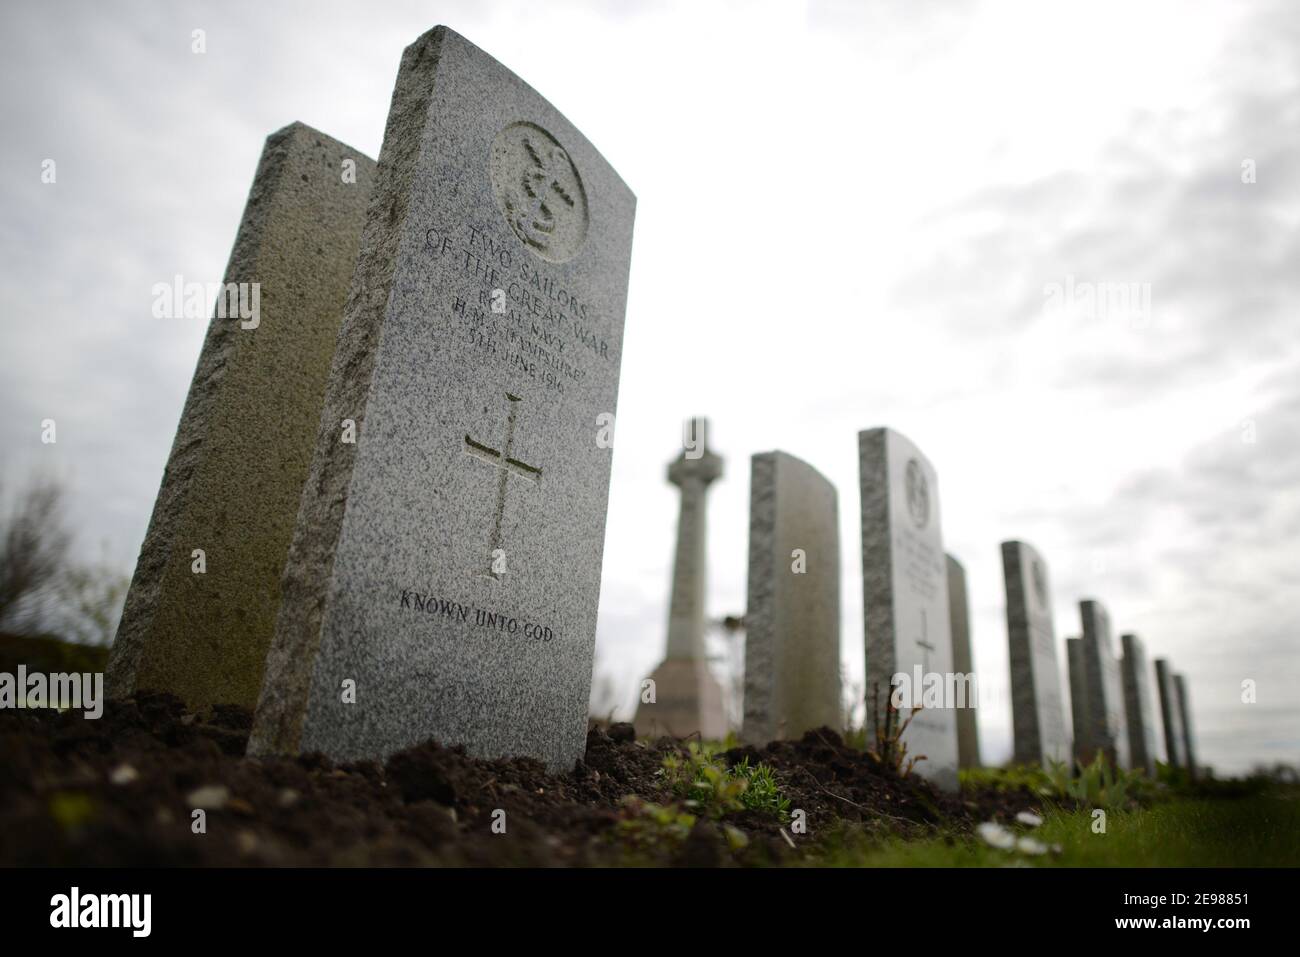 Tombes de 13 marins allemands au cimetière naval de Lyness qui est mort dans le Grand sauvent, Orcades, Écosse. Les Orcades au nord de l'Écosse Banque D'Images